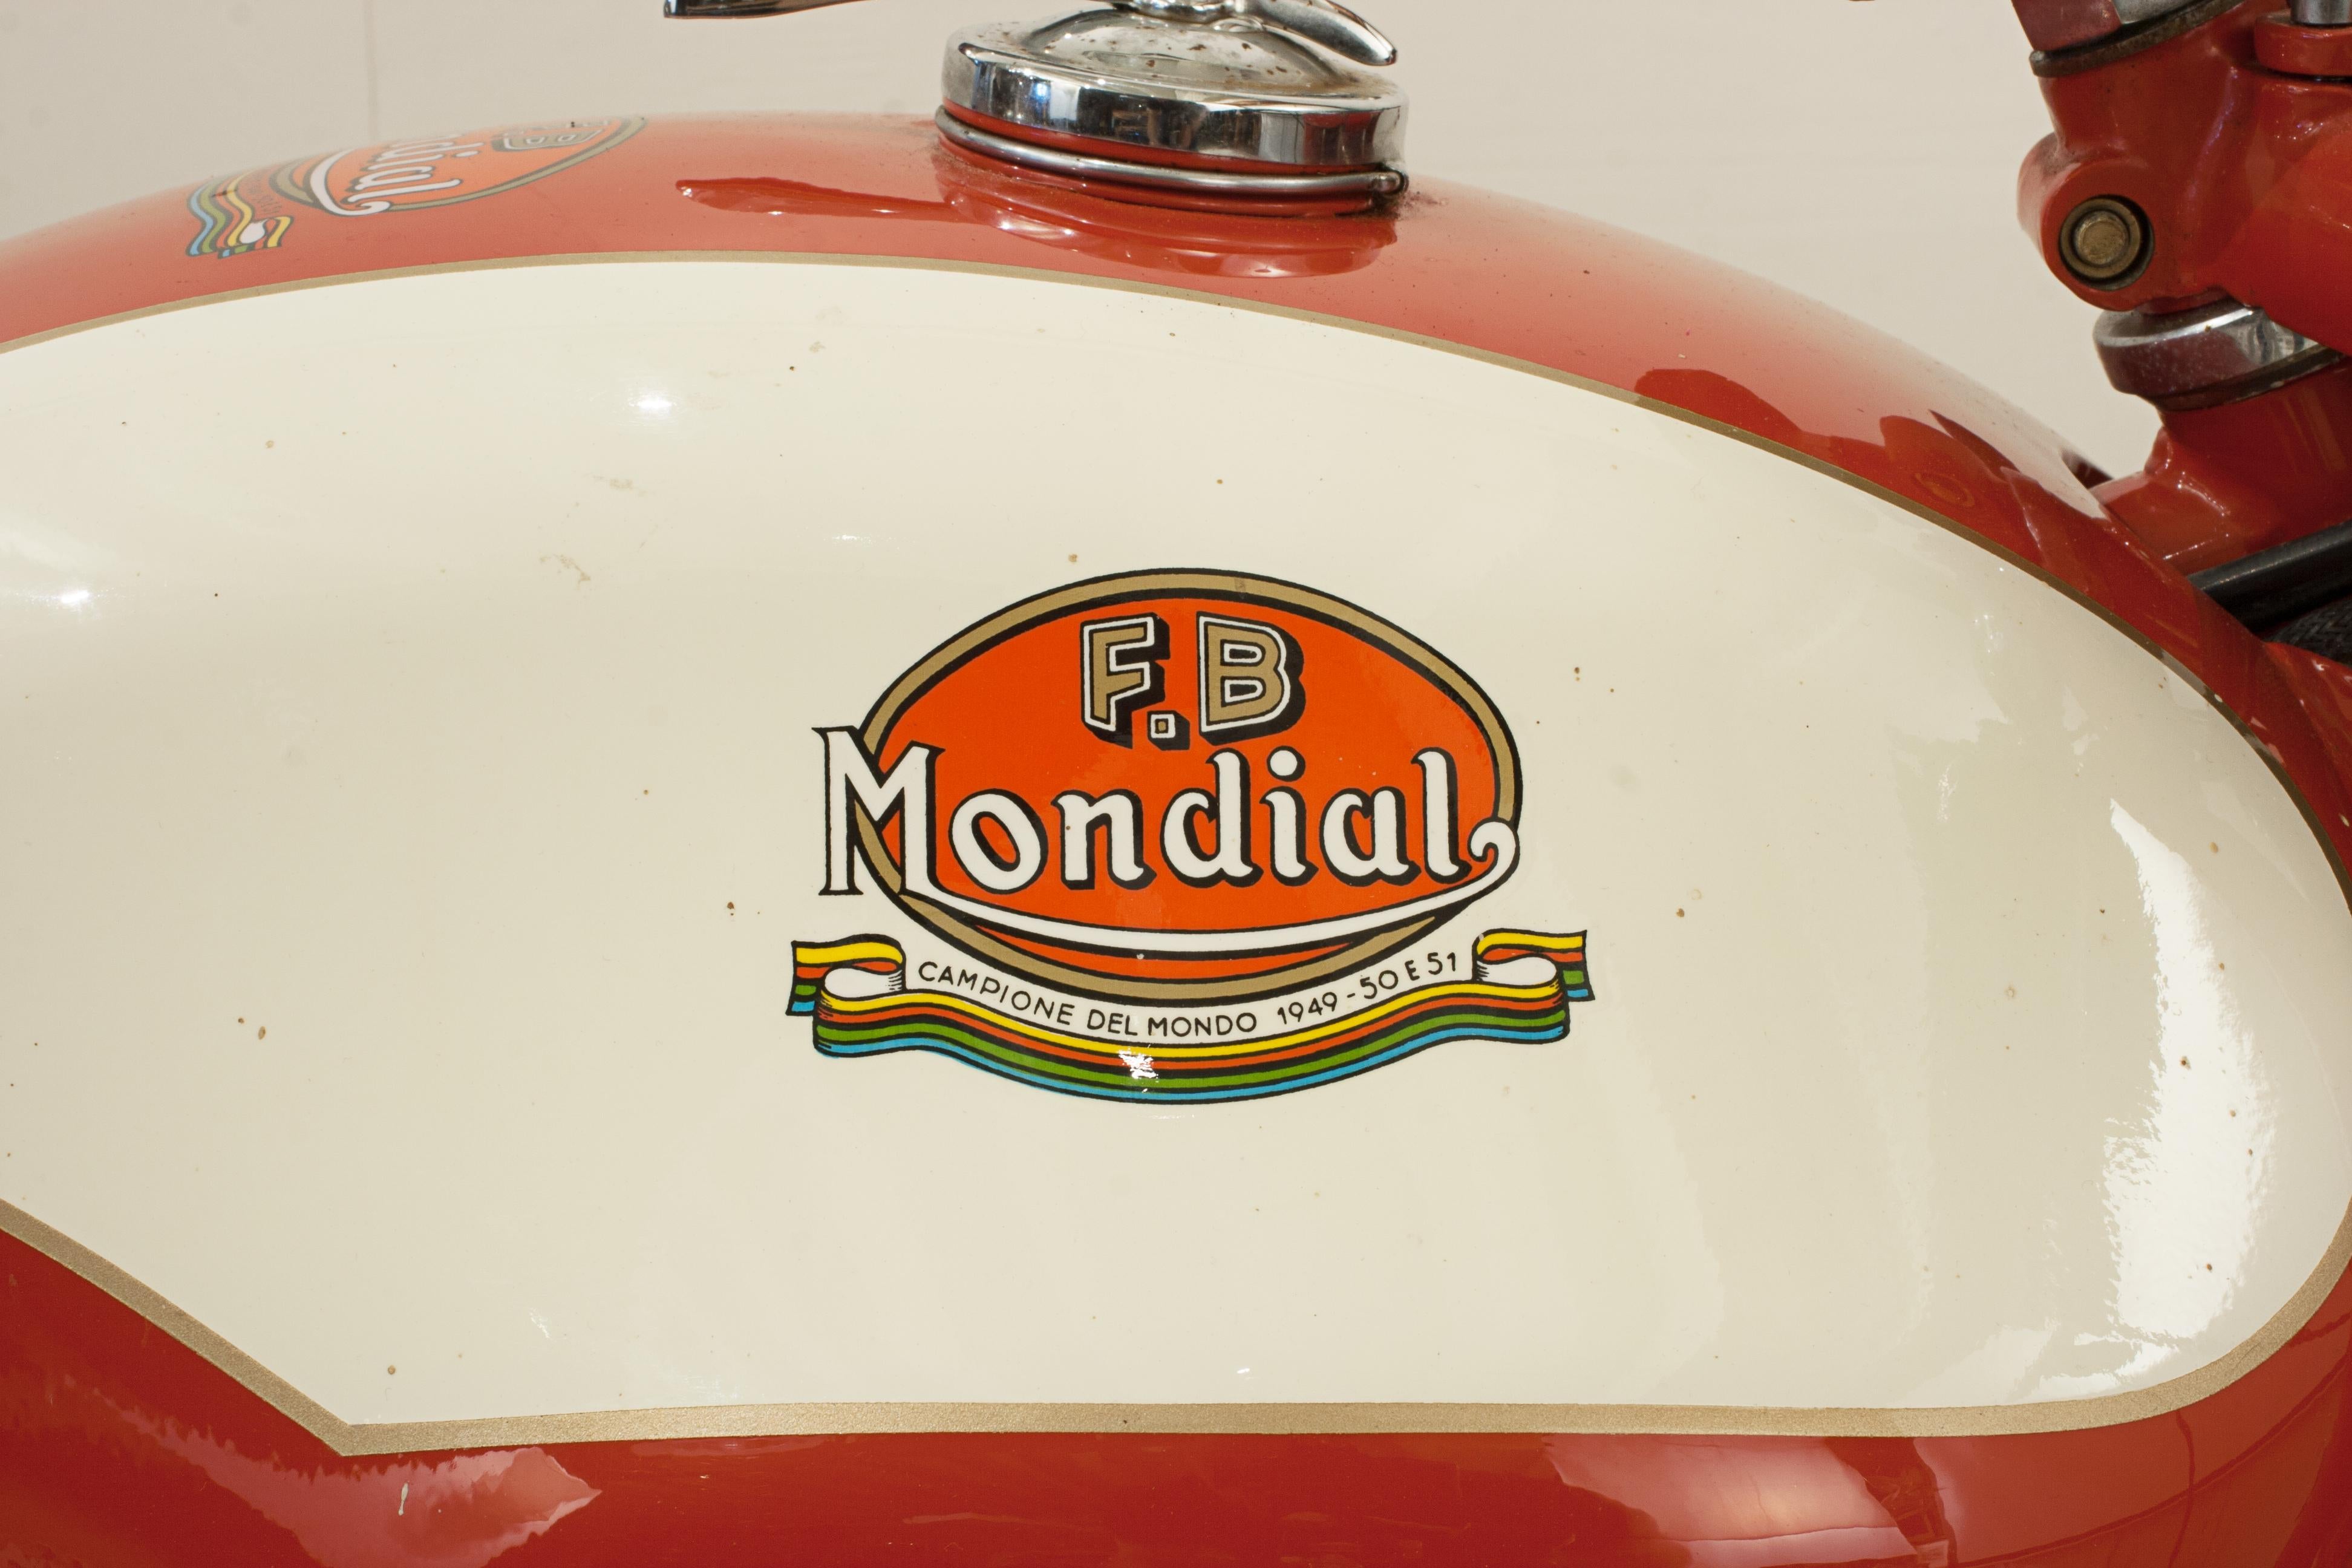 motorbikes used